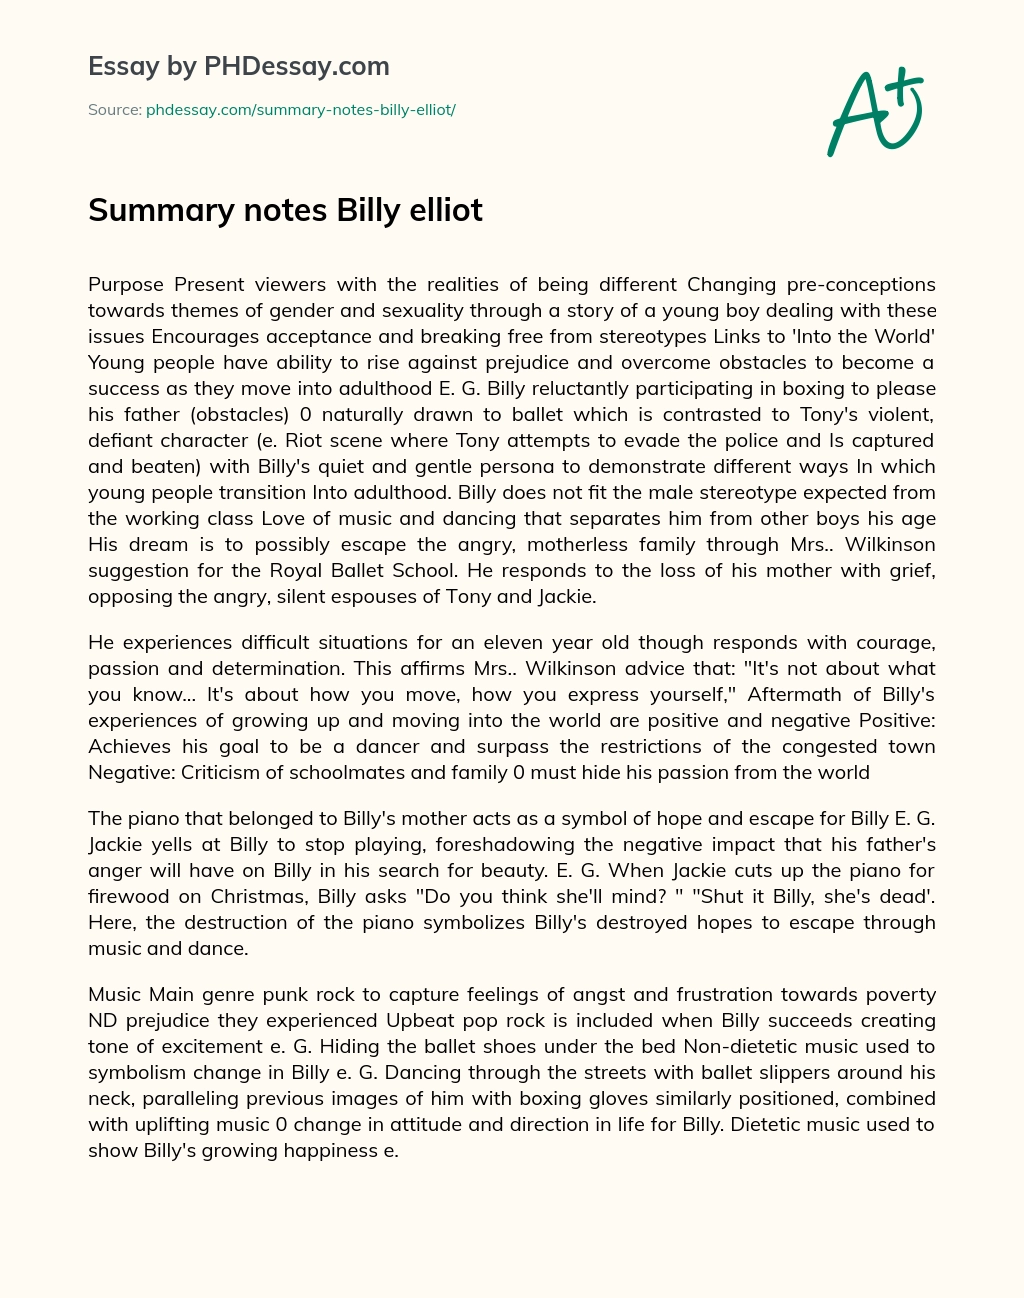 Summary notes Billy elliot essay